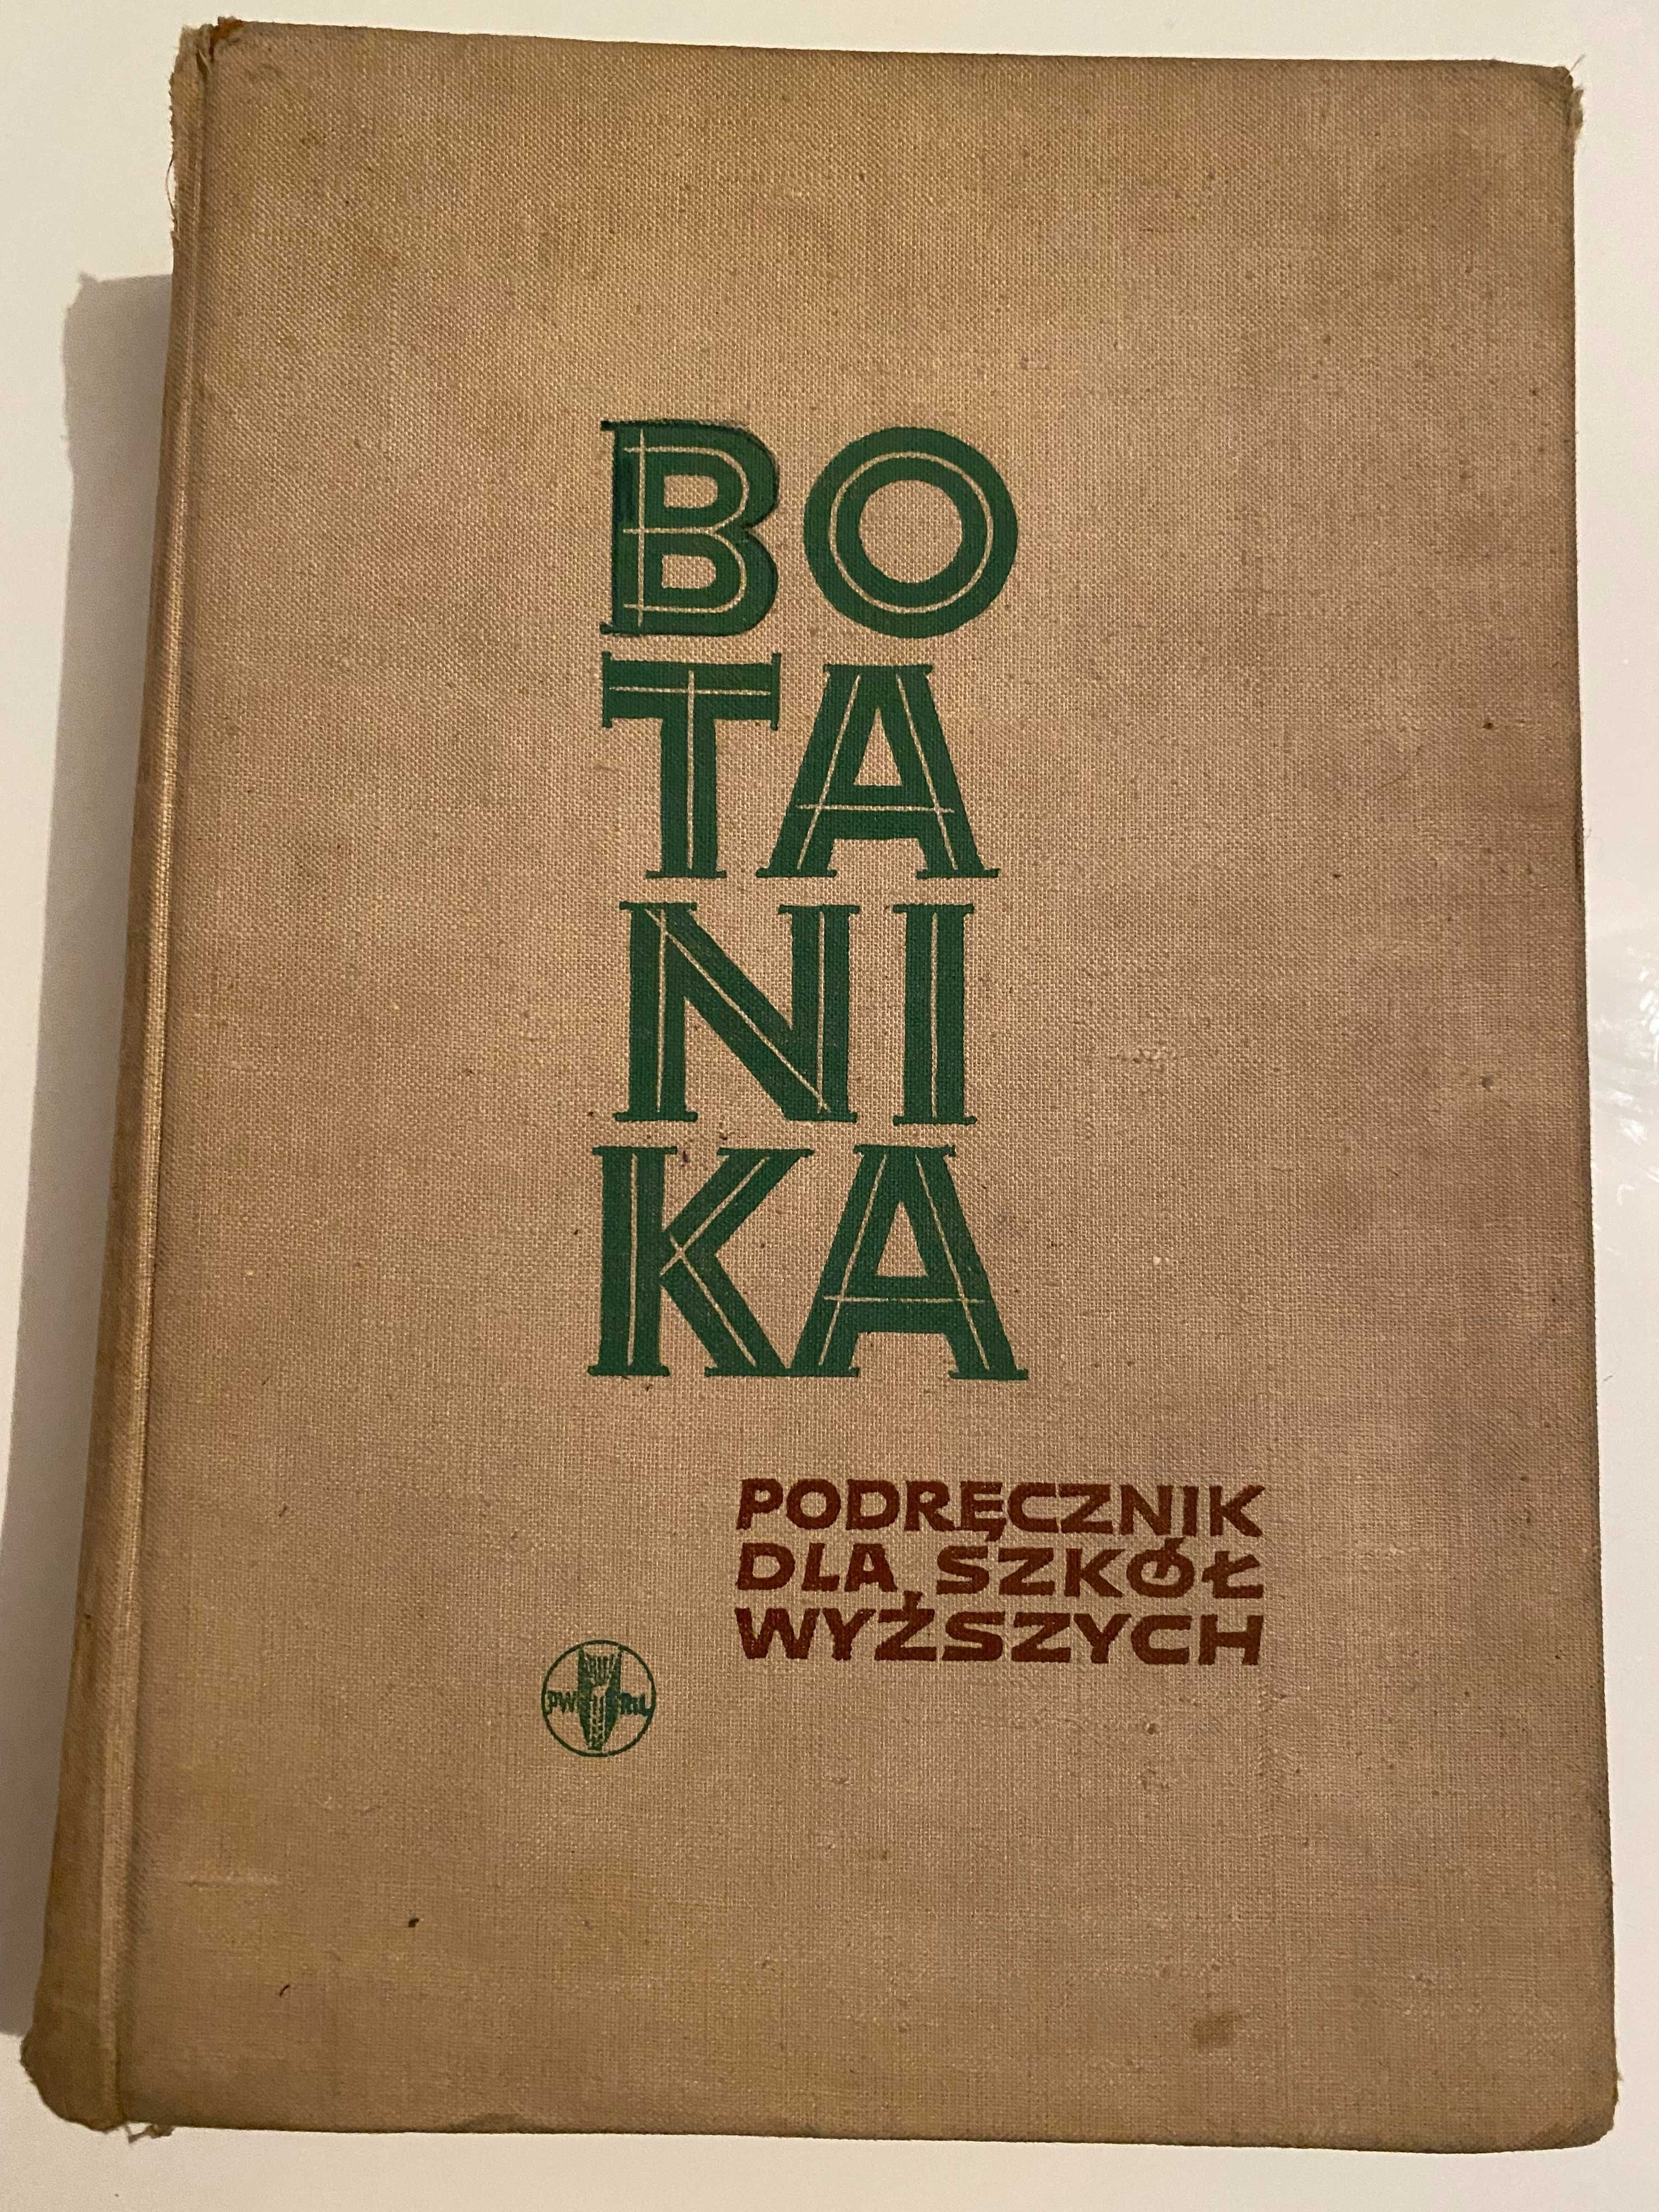 Botanika podręcznik dla szkół wyższych Strasburger